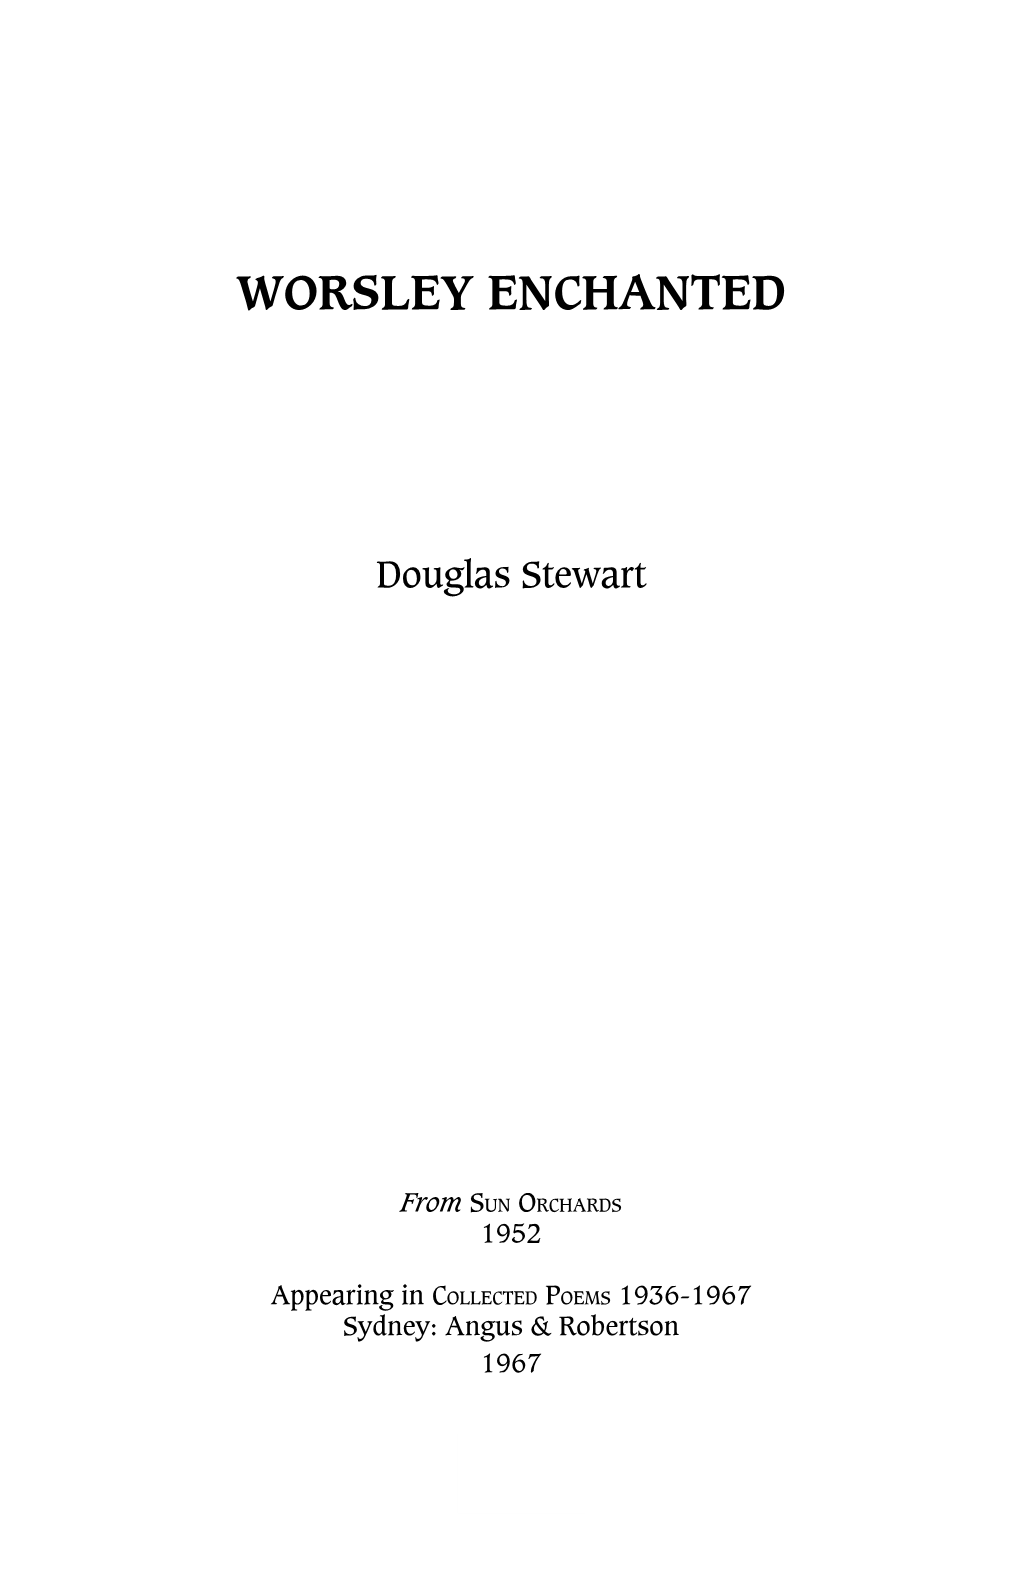 Worsley Enchanted